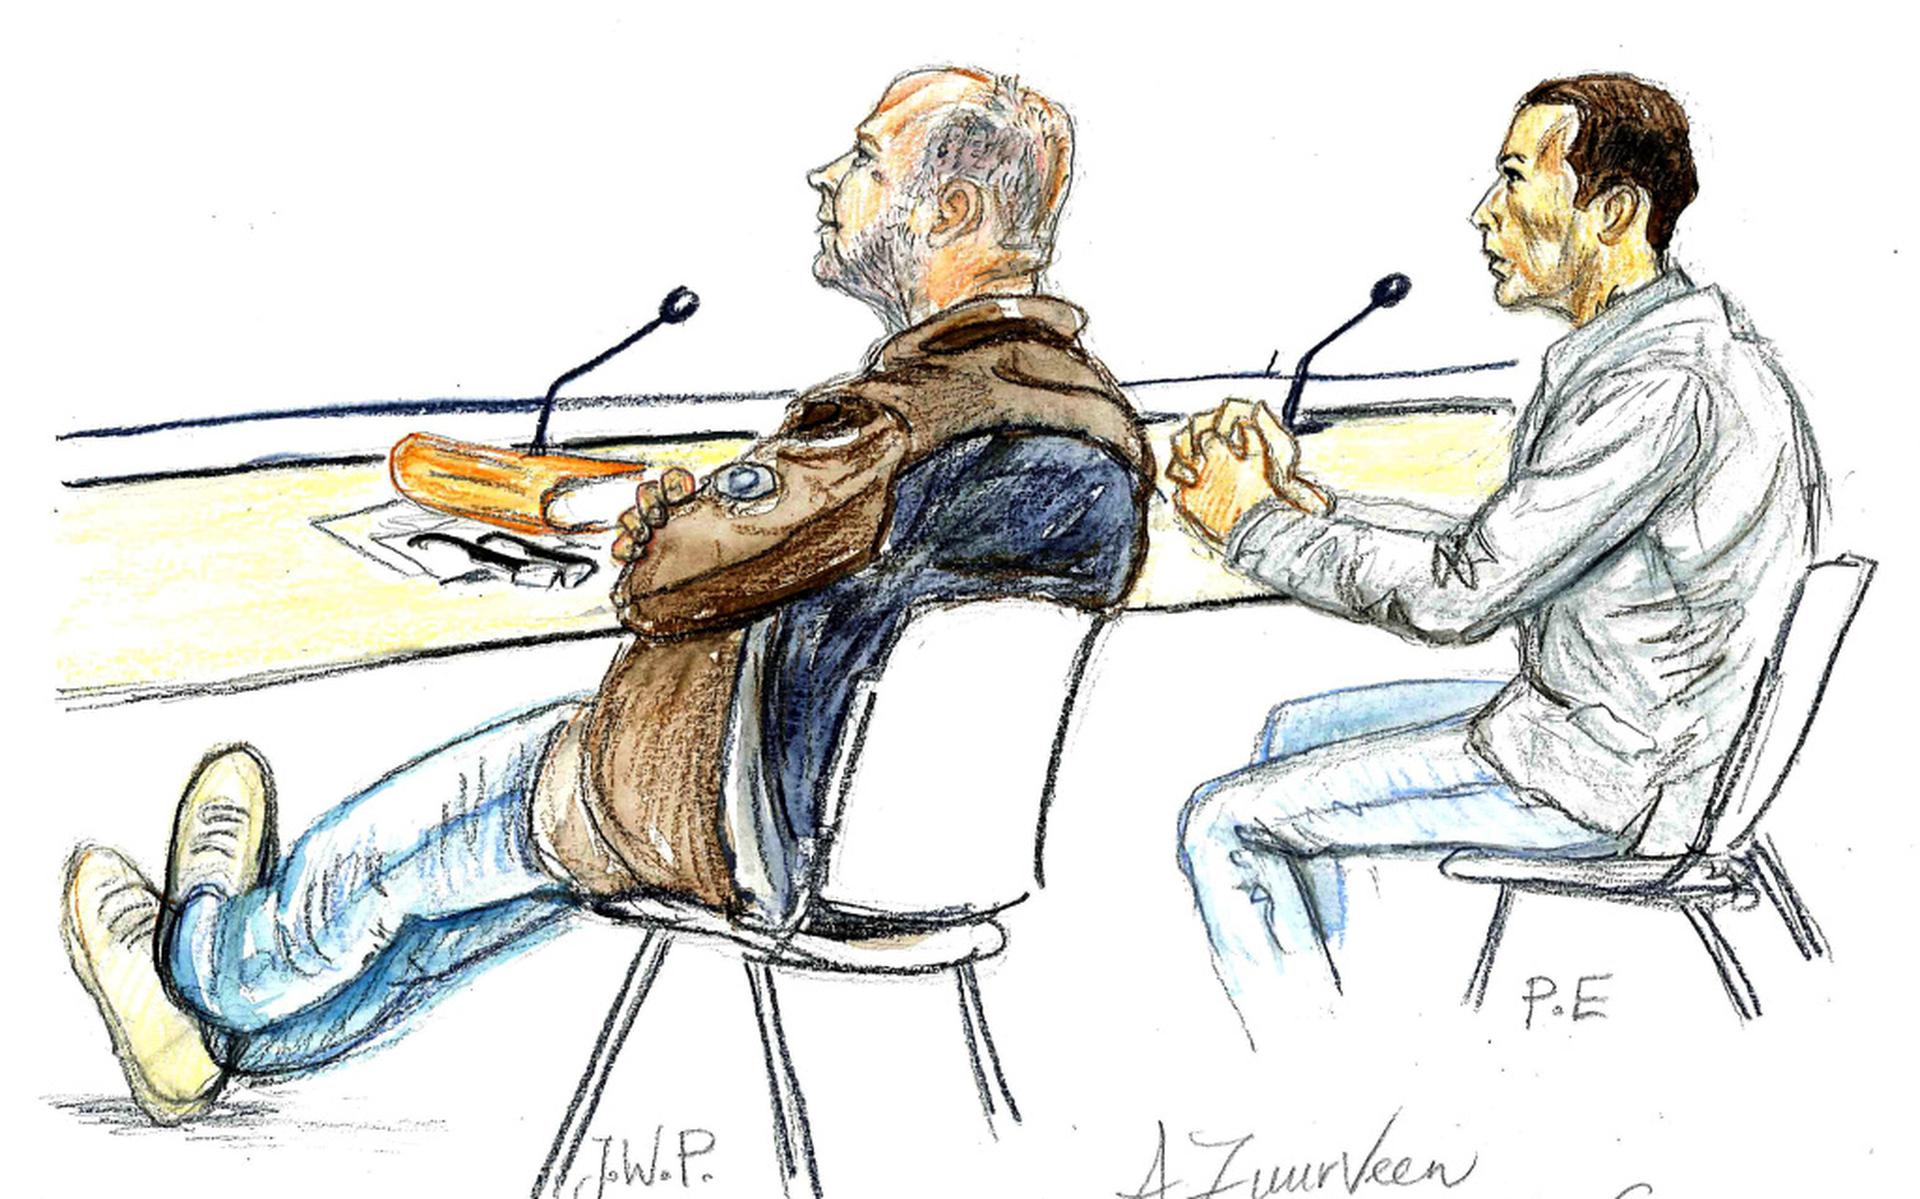 Willem P. (links) voor de rechtbank in 2013. Hij zit naast Pascal E., de man die Jan Elzinga doodschoot. Tekening: Annet Zuurveen